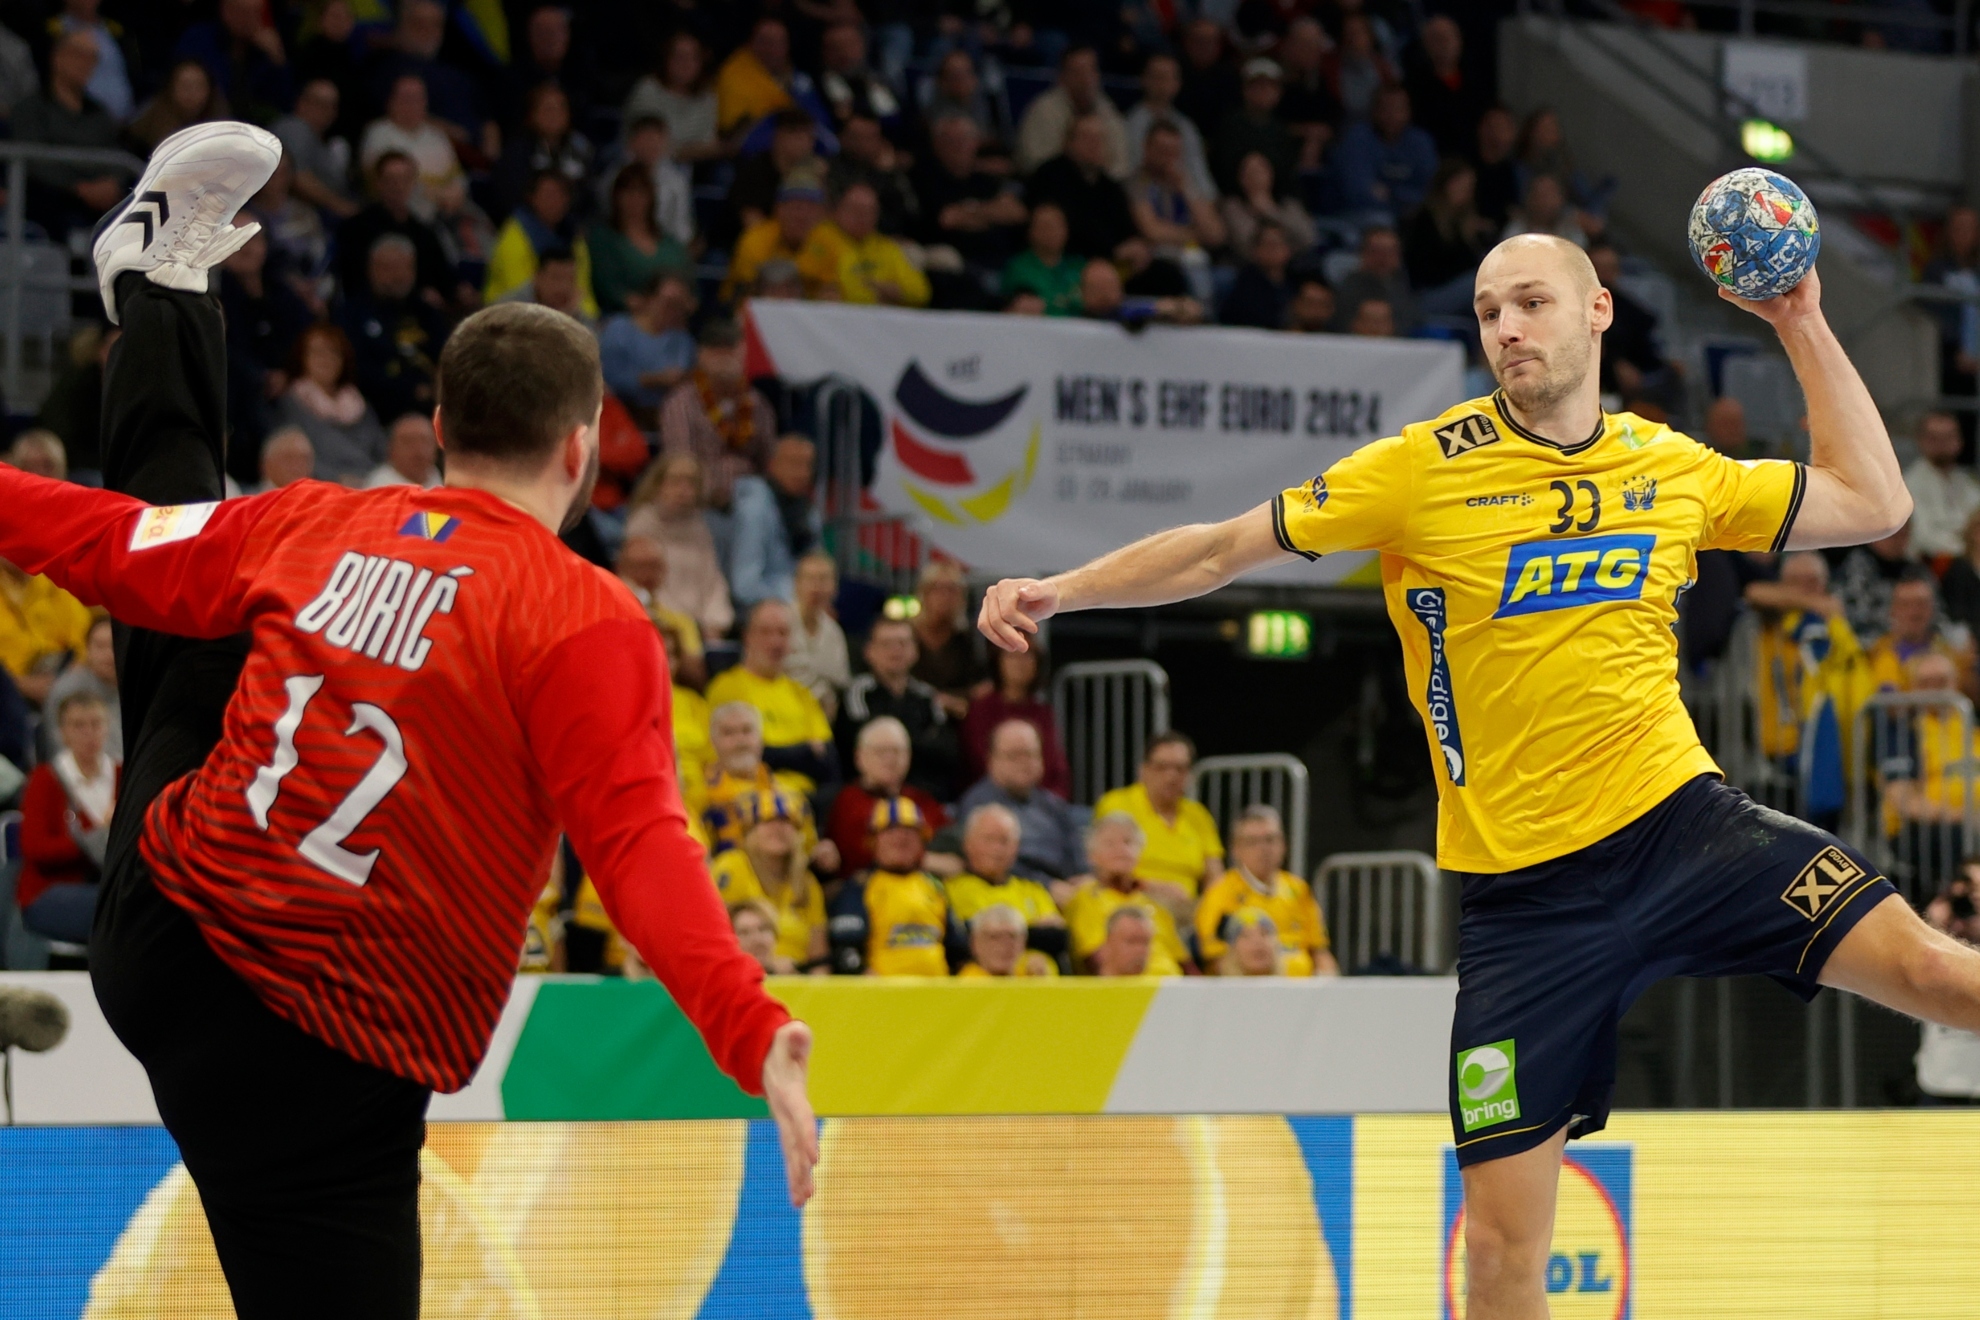 El lateral sueco Lukas Sandell lanza ante el meta bosnio Buric /